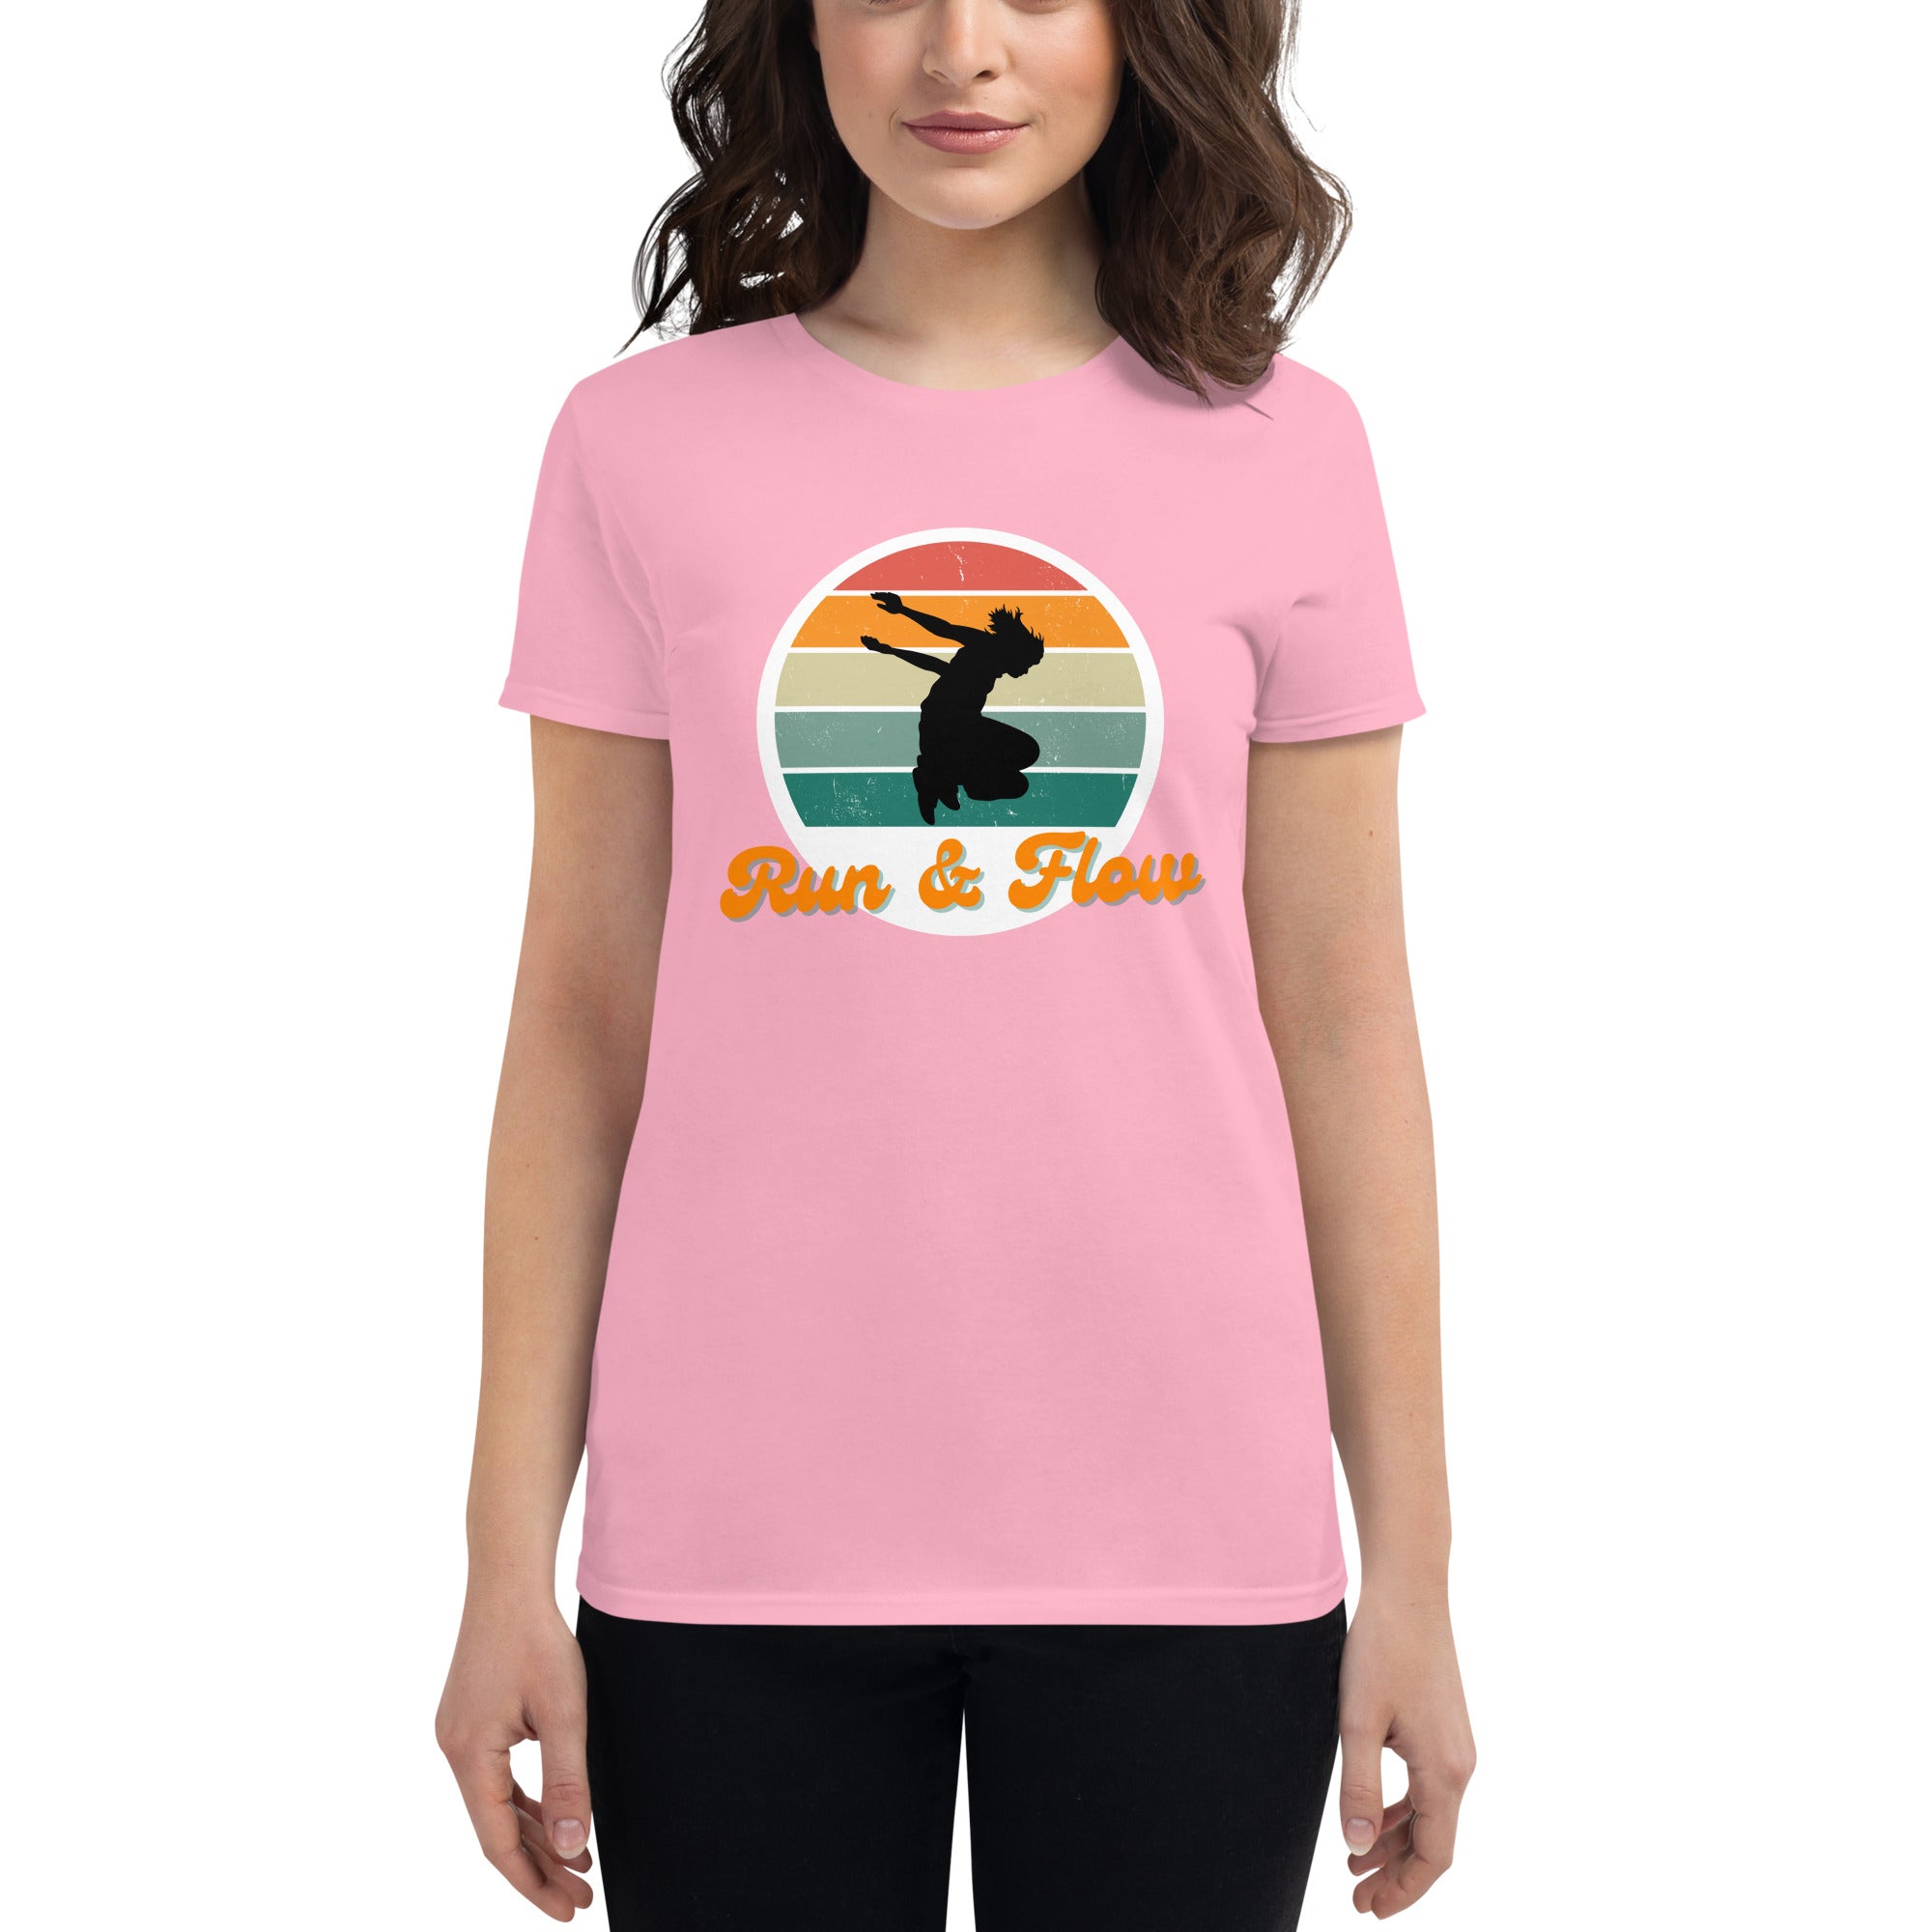 Run & Flow Women's Fitted T-Shirt